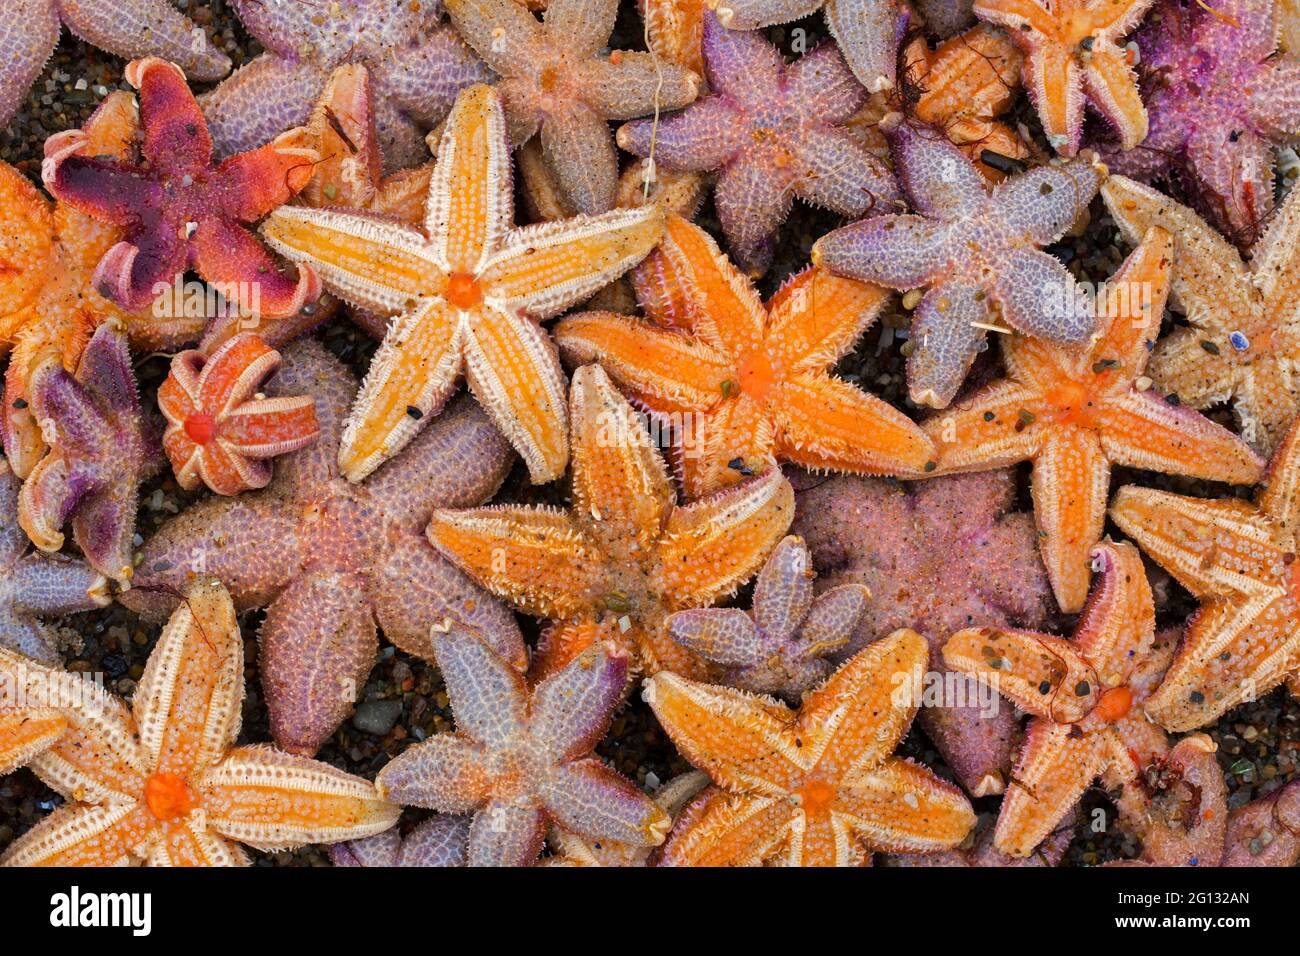 Échouage massif d'étoiles de mer communes mortes / étoiles de mer communes / étoiles de mer à sucre (Asterias rubens) lavées à terre sur la plage de sable le long de la côte de la mer du Nord Banque D'Images